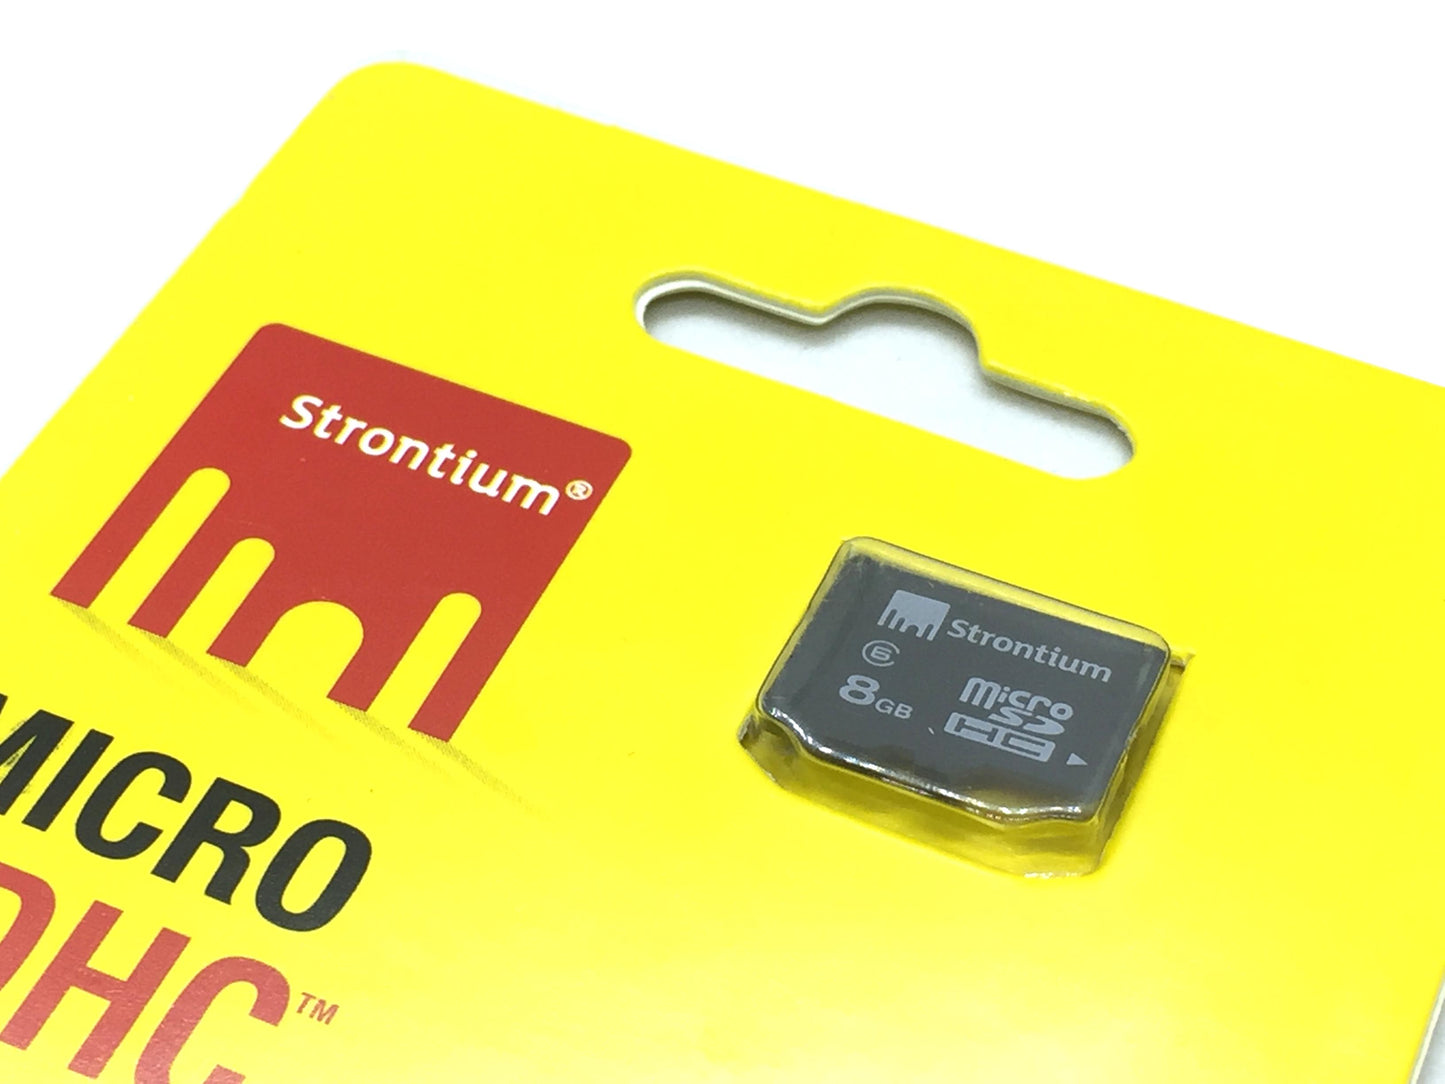 SD MicroSD Memory Card 8 GB for Raspberry Pi